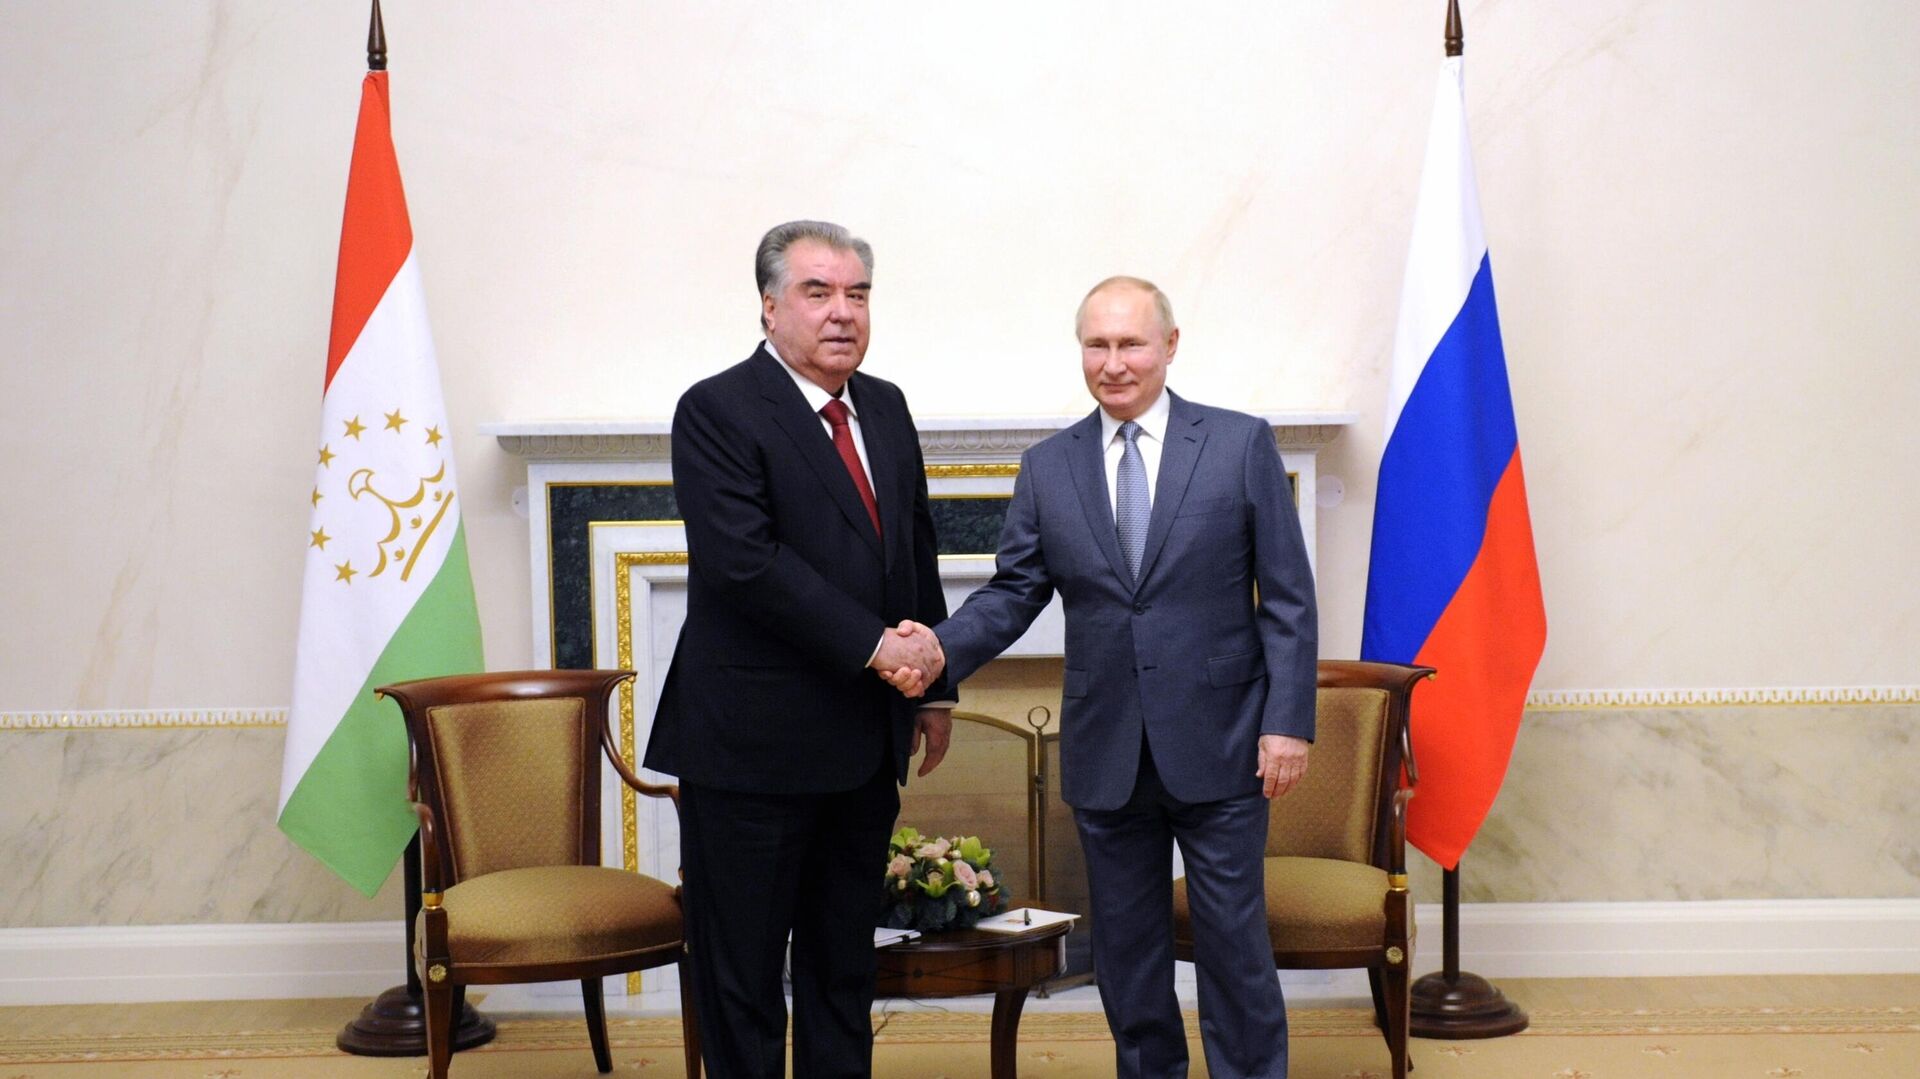 El presidente ruso, Vladímir Putin, en una reunión con el presidente de Tayikistán, Emomali Rahmon. - Sputnik Mundo, 1920, 27.12.2021